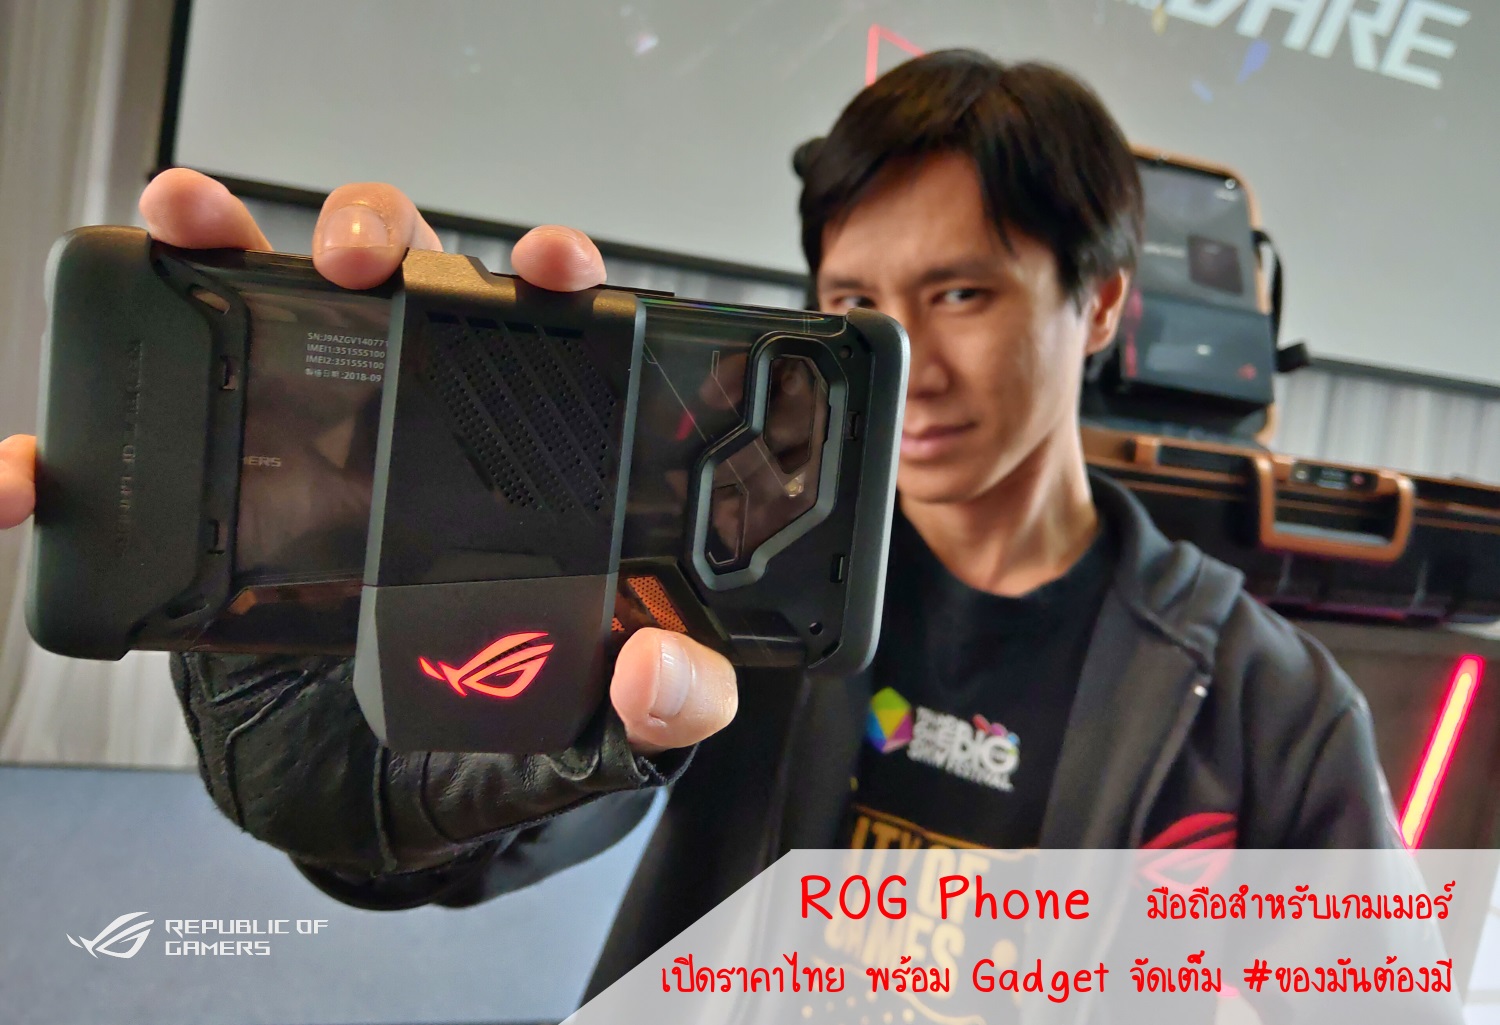 ROG Phone มือถือสำหรับเกมเมอร์ เปิดราคาไทยพร้อม Gadget จัดเต็ม #ของมันต้องมี